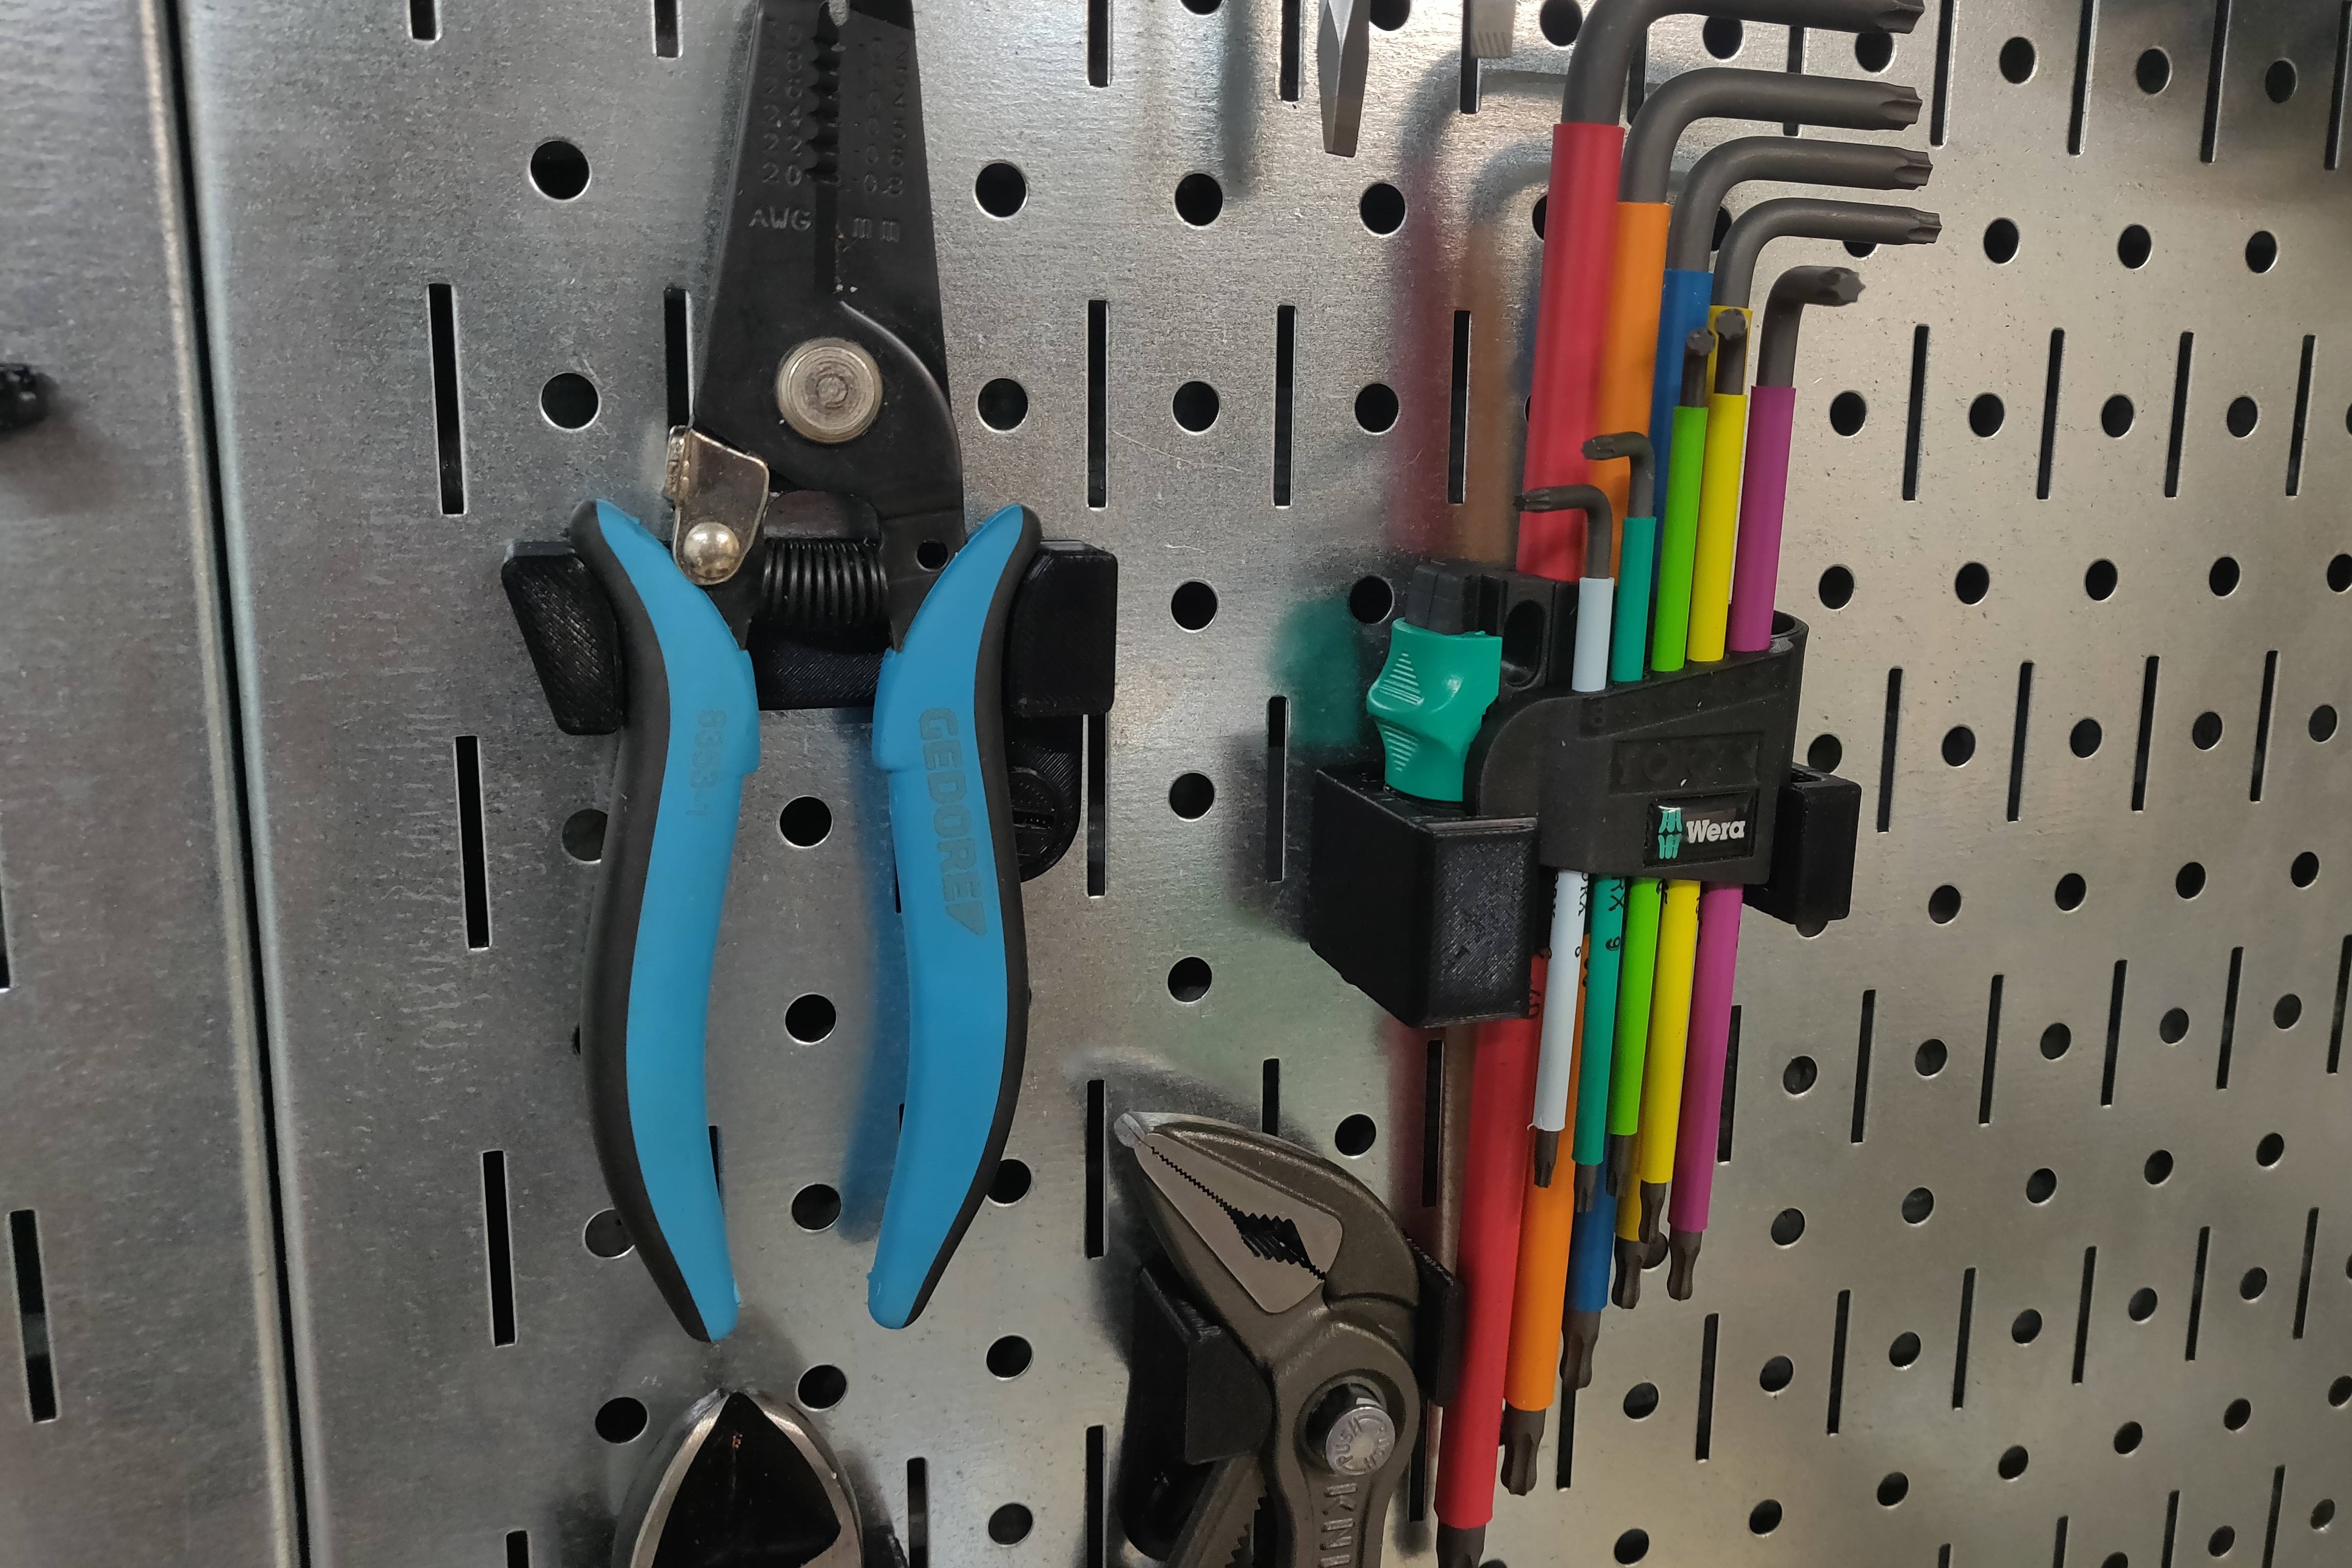 3D printed pegboard tool holders